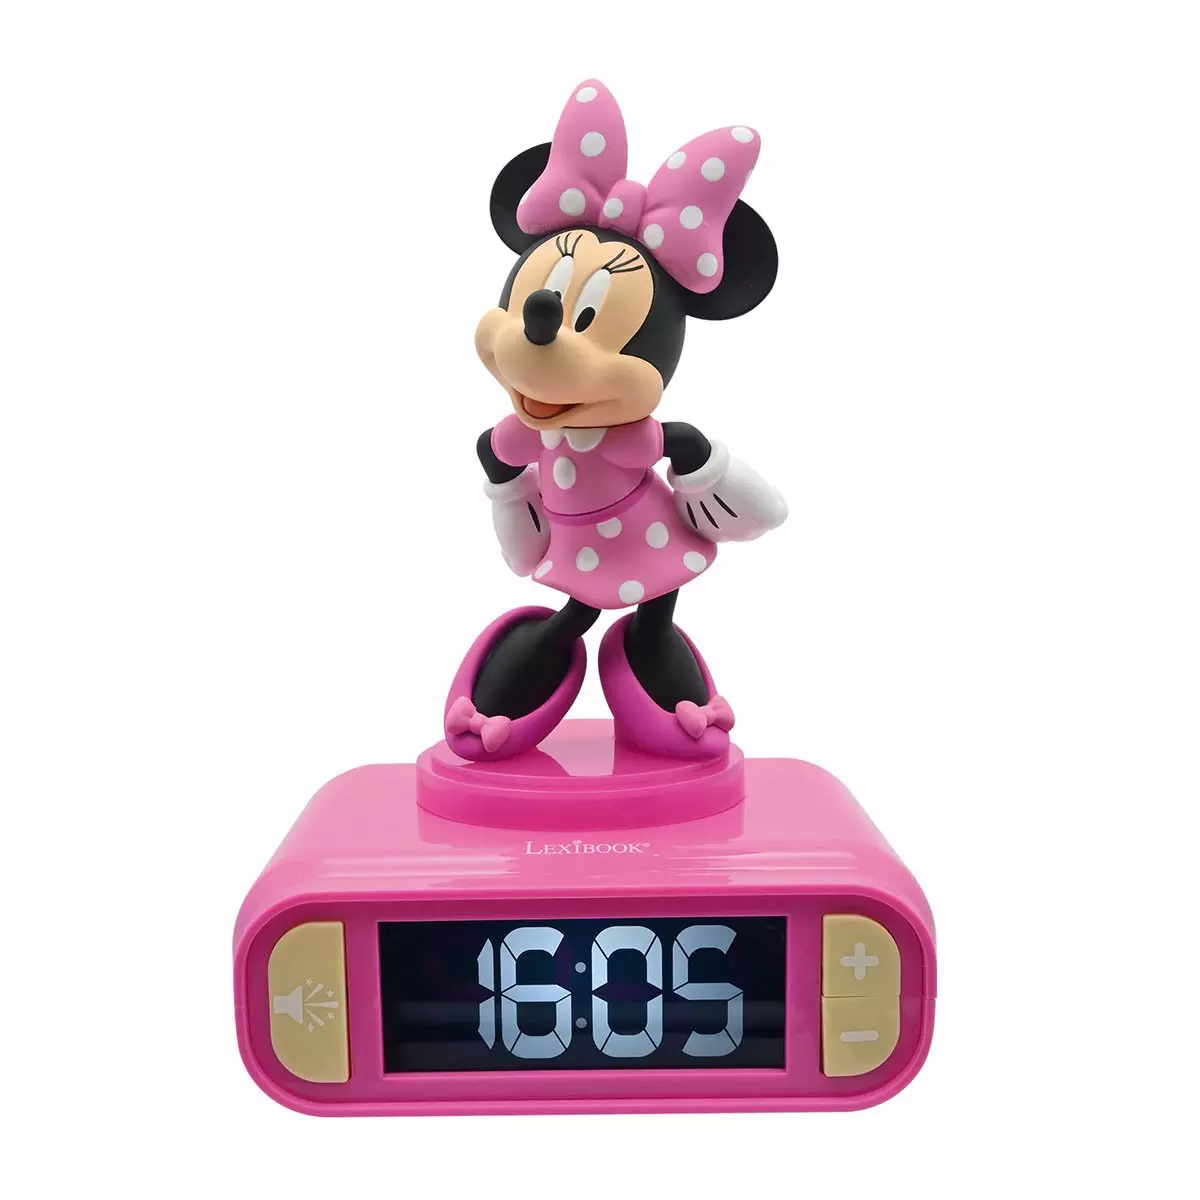 Lexibook Minnie 3D Digital Alarm Clocknight